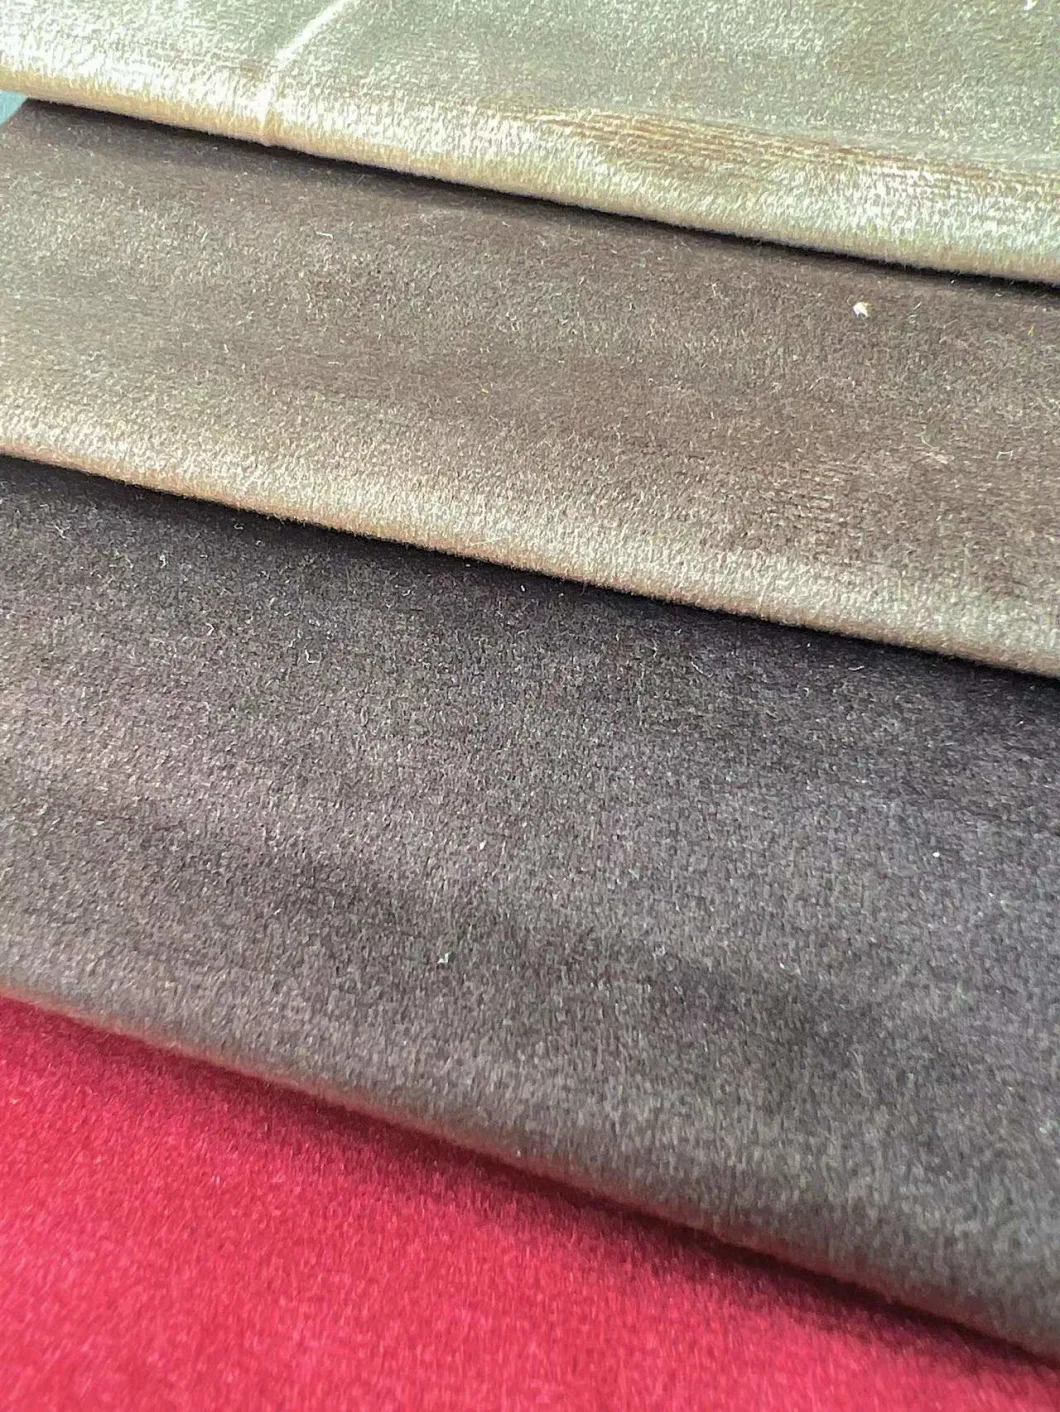 Hot Selling Decorate Soft Dutch Velvet Holland Velvet Fabric for Curtain Sofa Cover